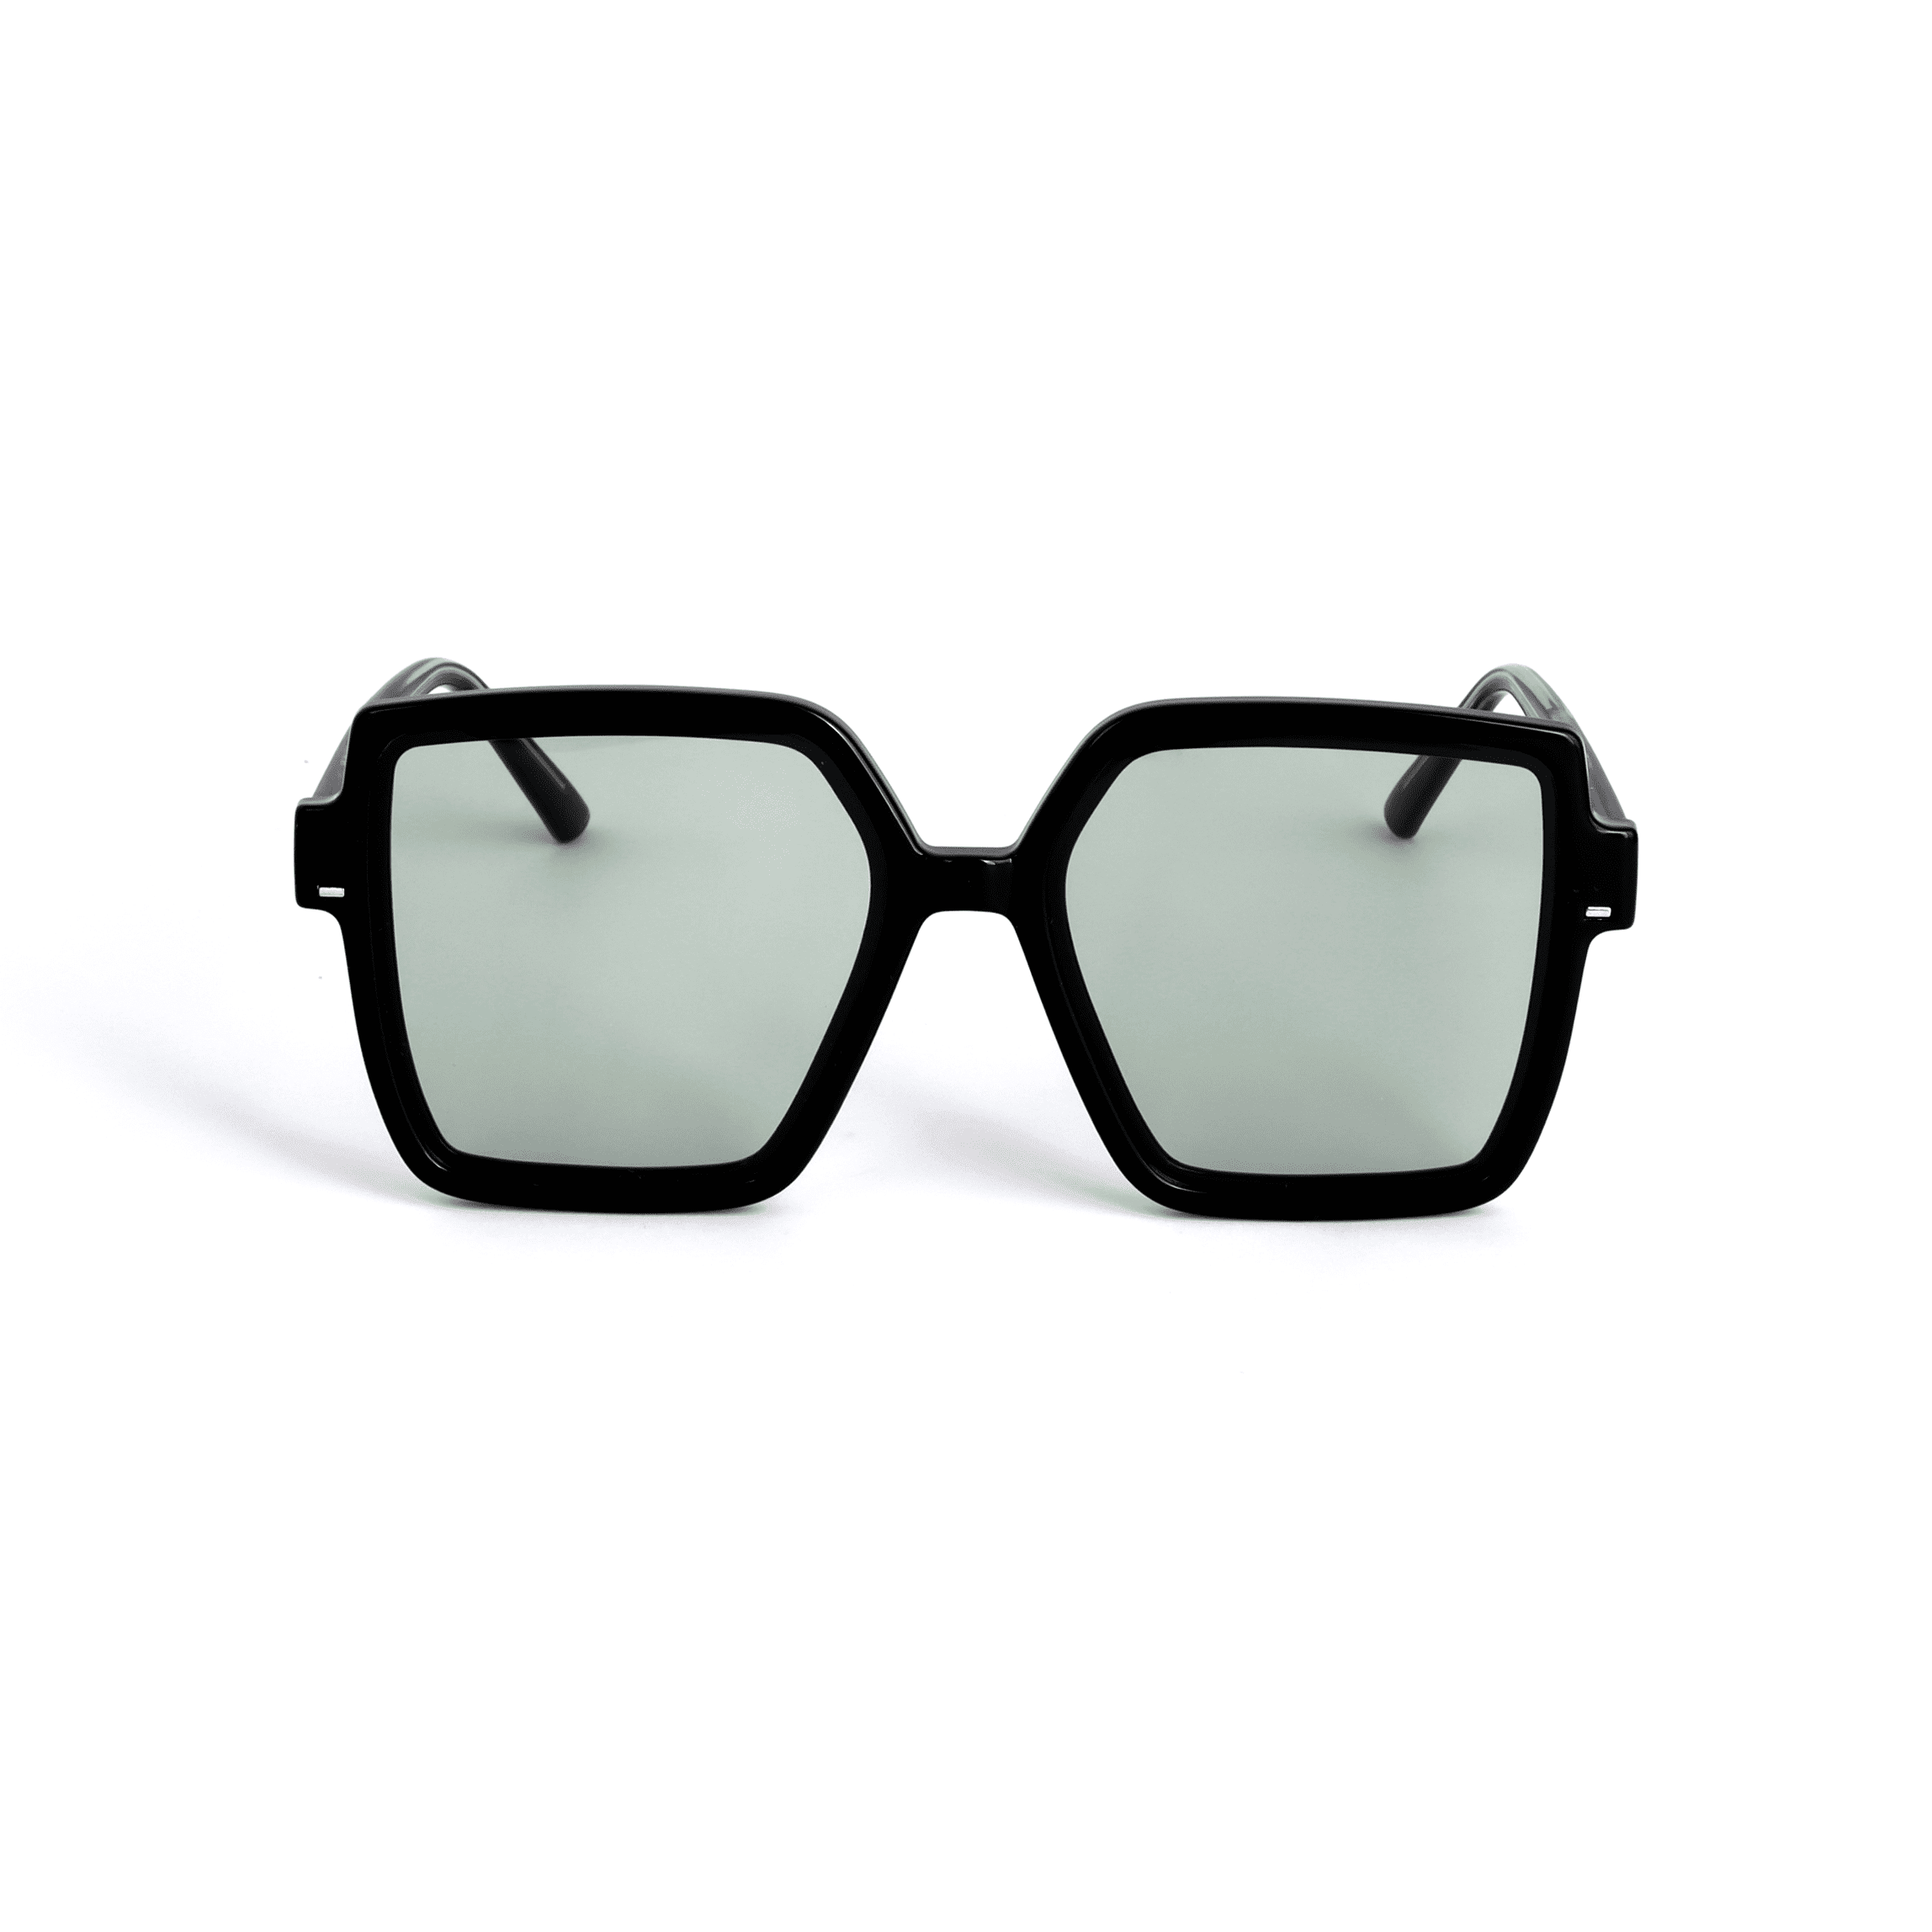 Abdosy Retro Square Gradient Lens Unisex Sunglasses